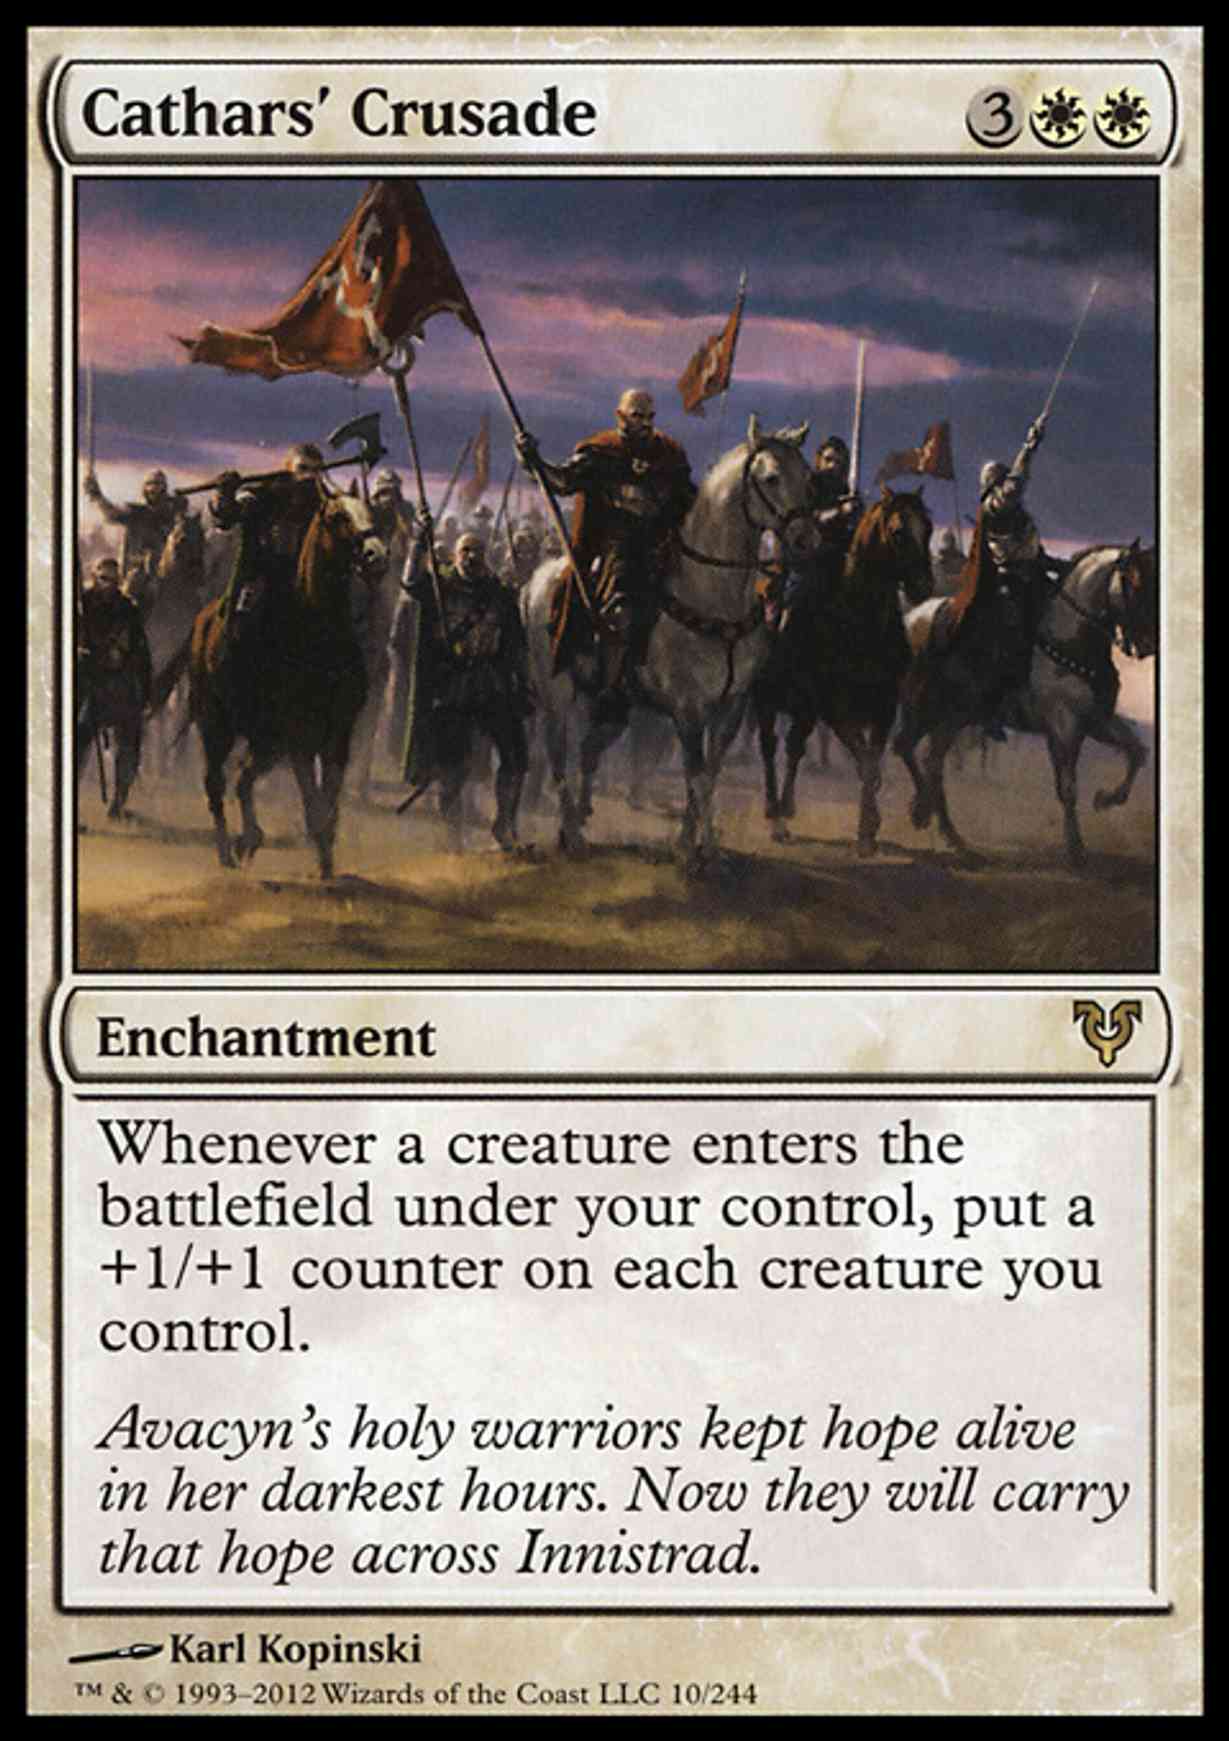 Cathars' Crusade magic card front